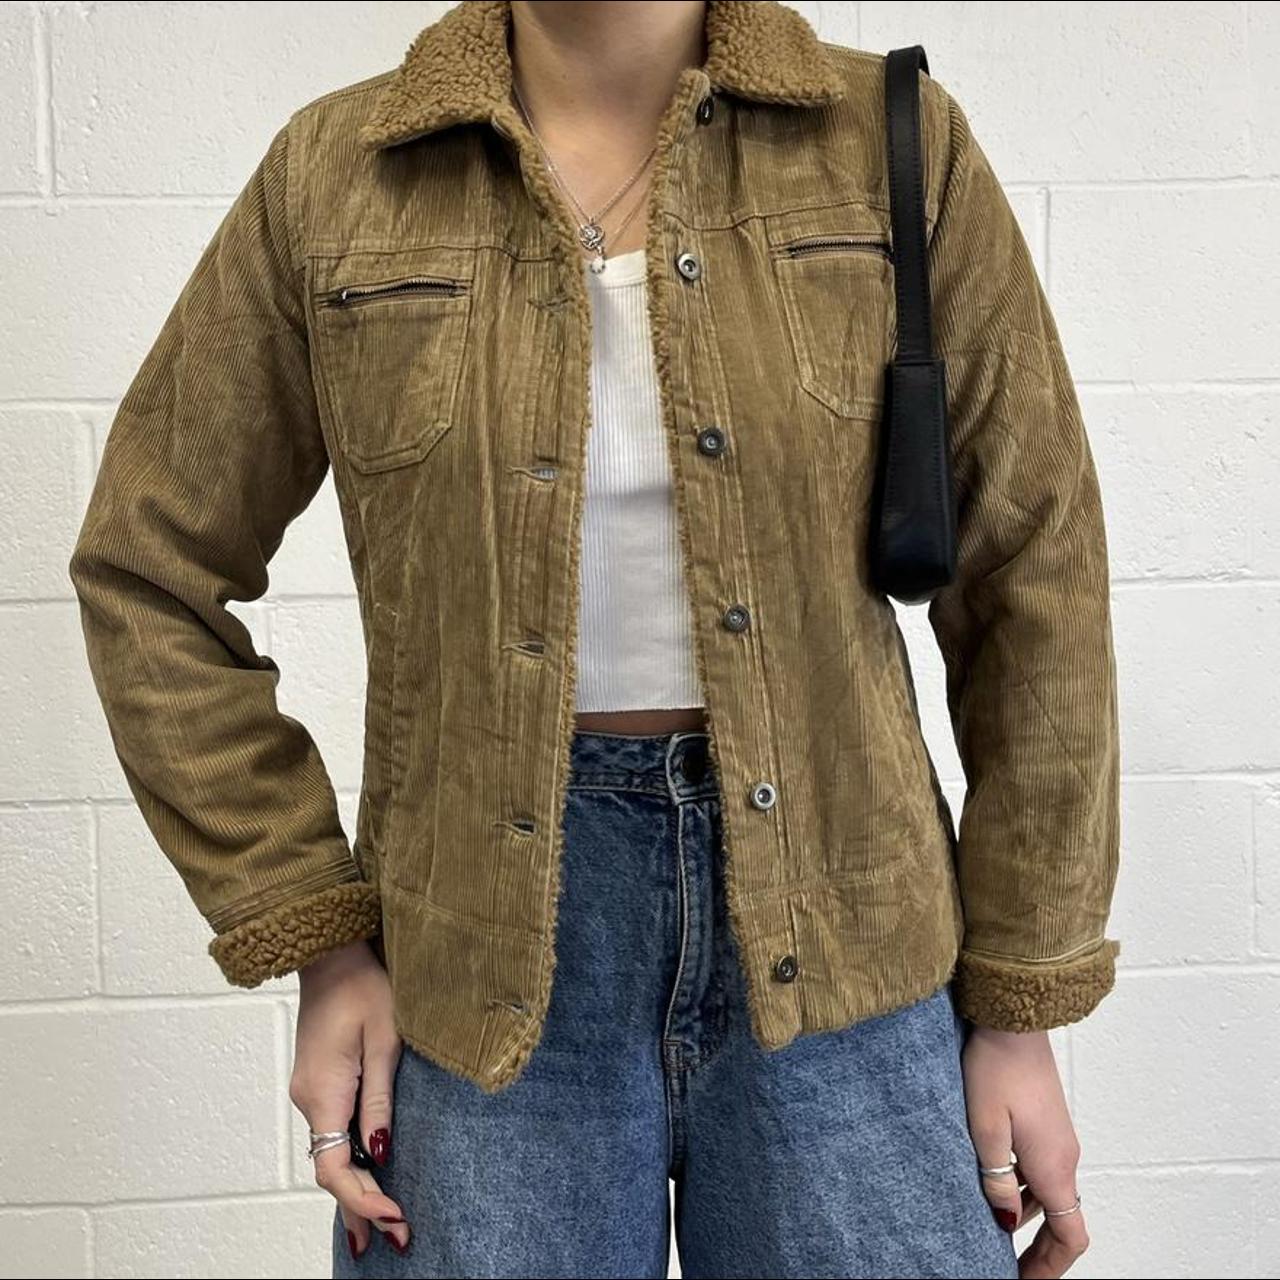 Vintage 90s corduroy jacket with faux fur trim, size... - Depop